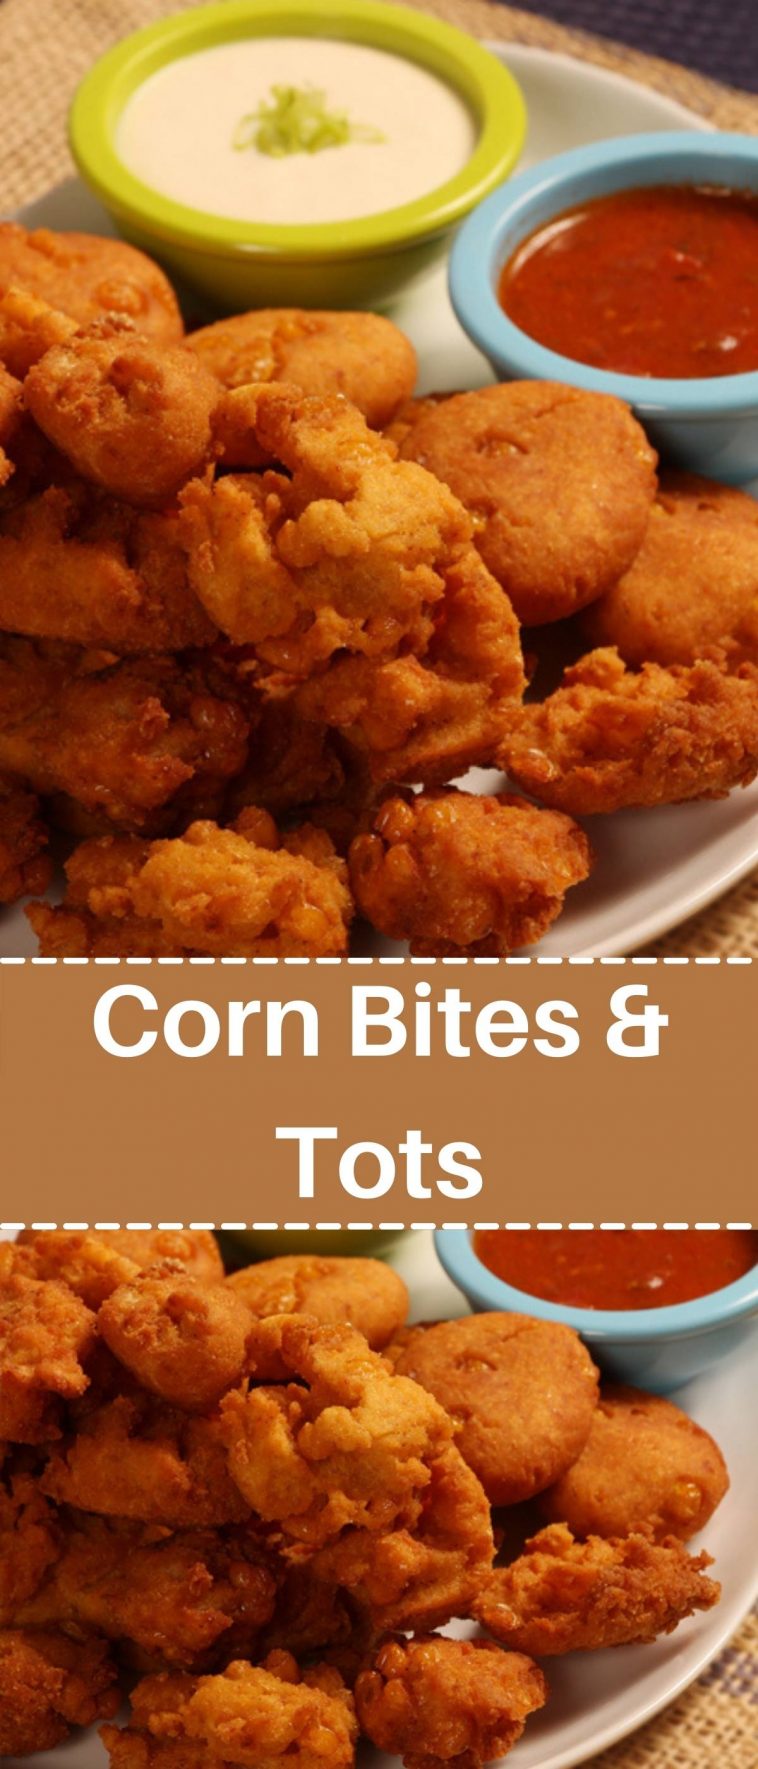 Corn Bites & Tots